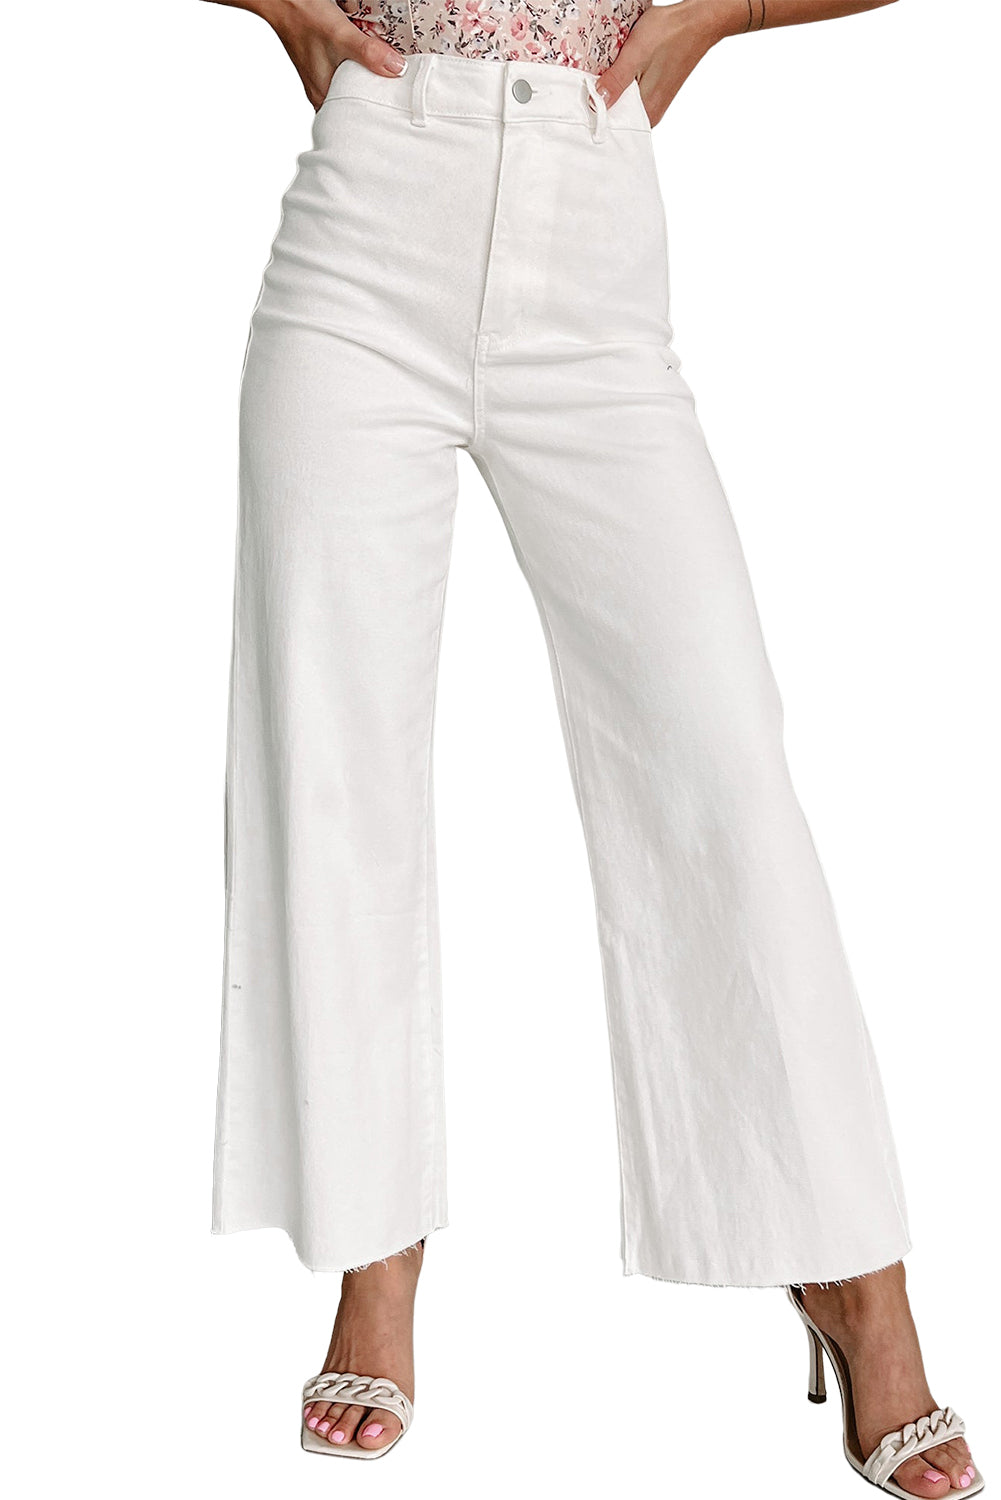 Weiße, einfarbige Crop-Jeans mit weitem Bein und ungesäumtem Saum